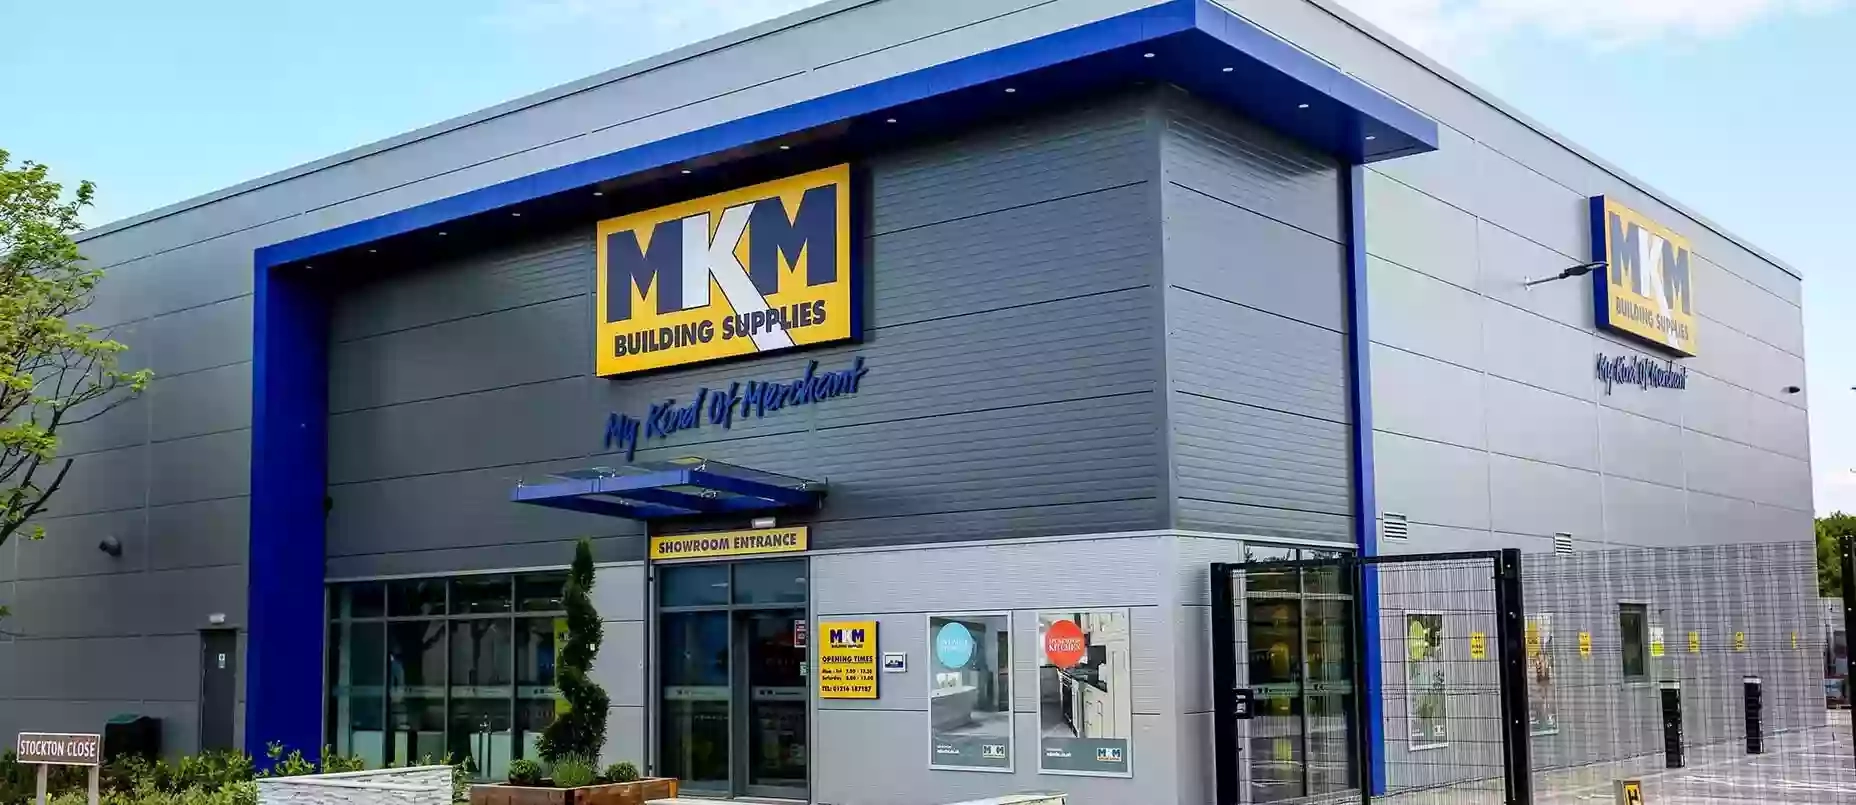 MKM Building Supplies Birmingham North